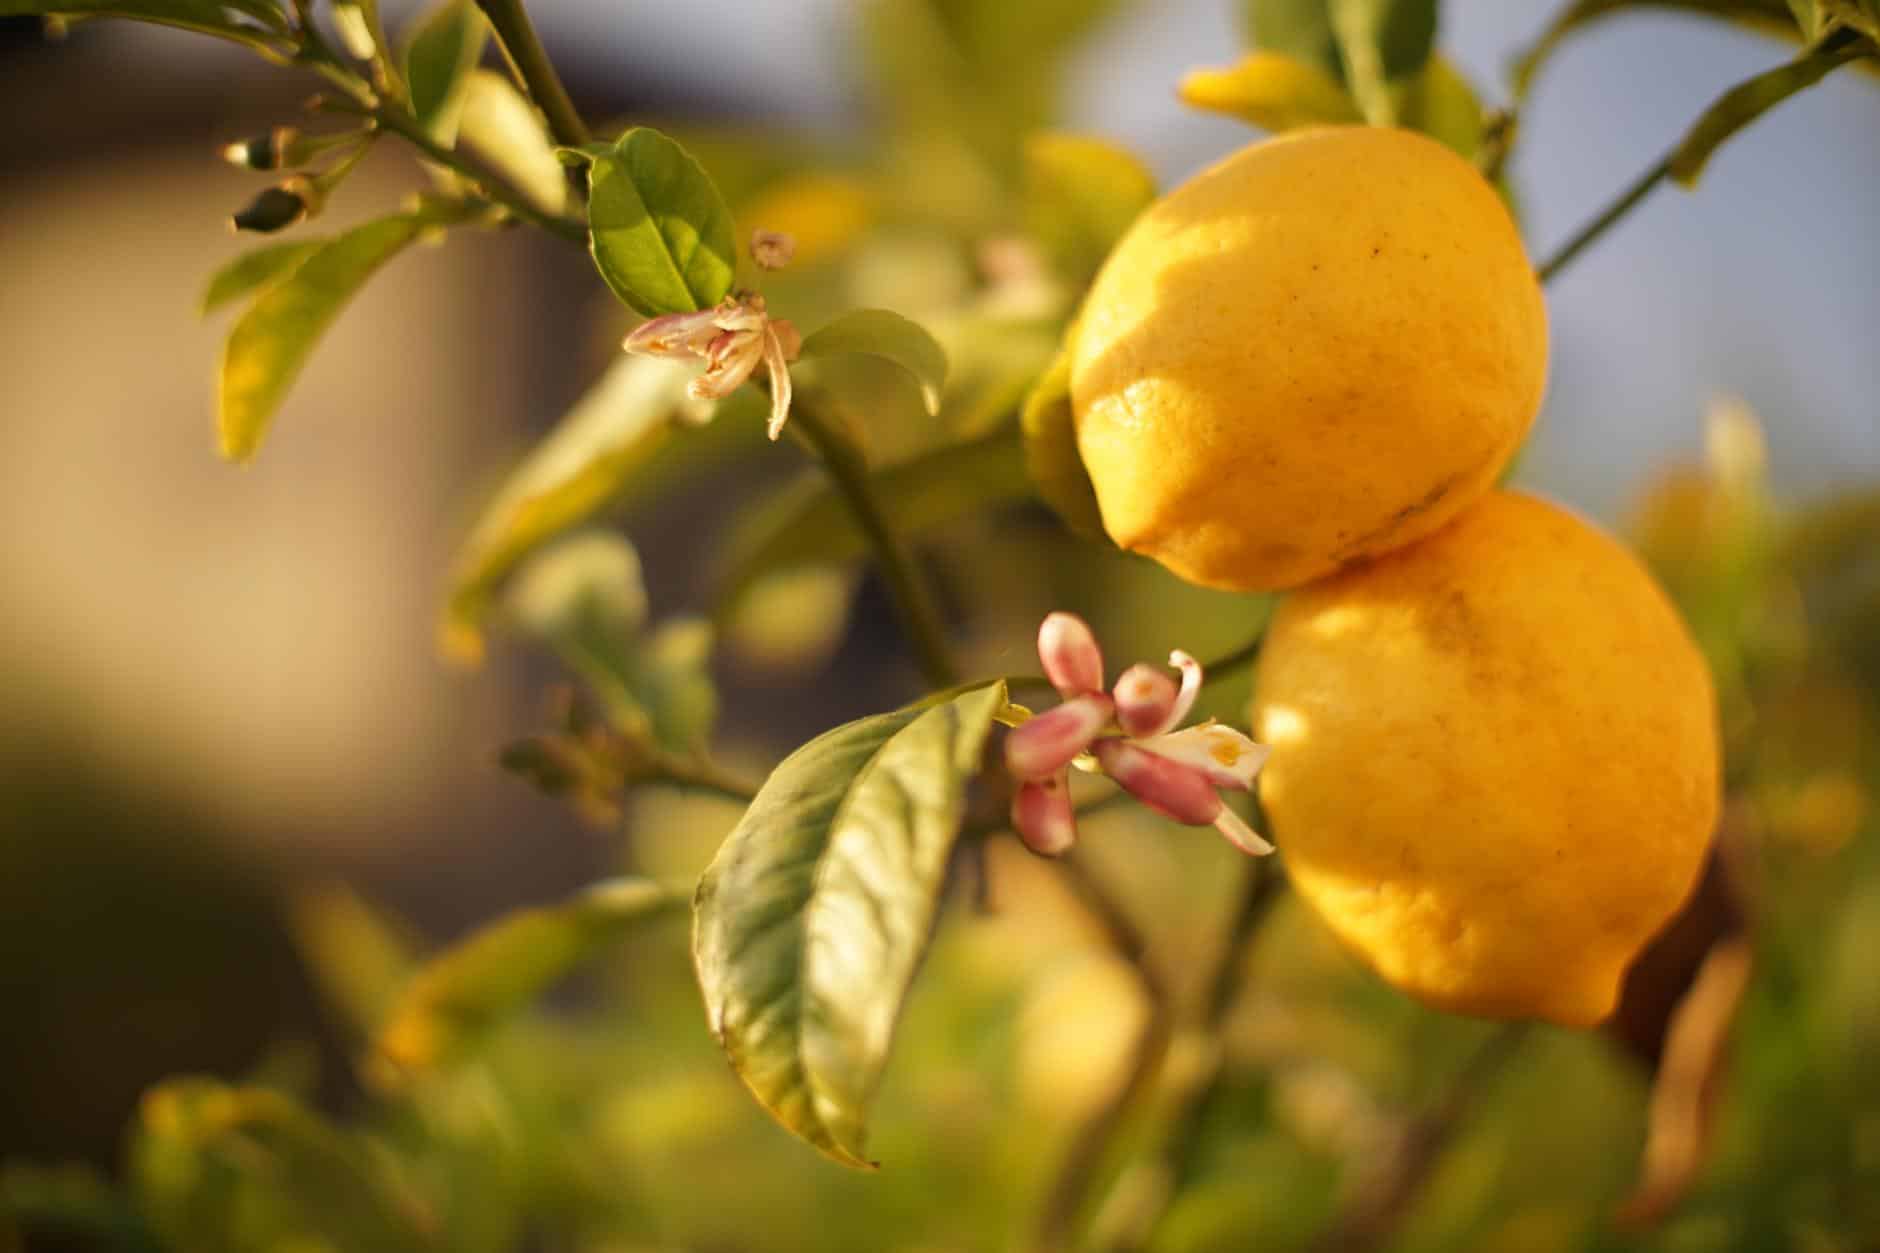 Lo creas o no, congelar limones puede ser lo mejor que puedes hacer con ellos